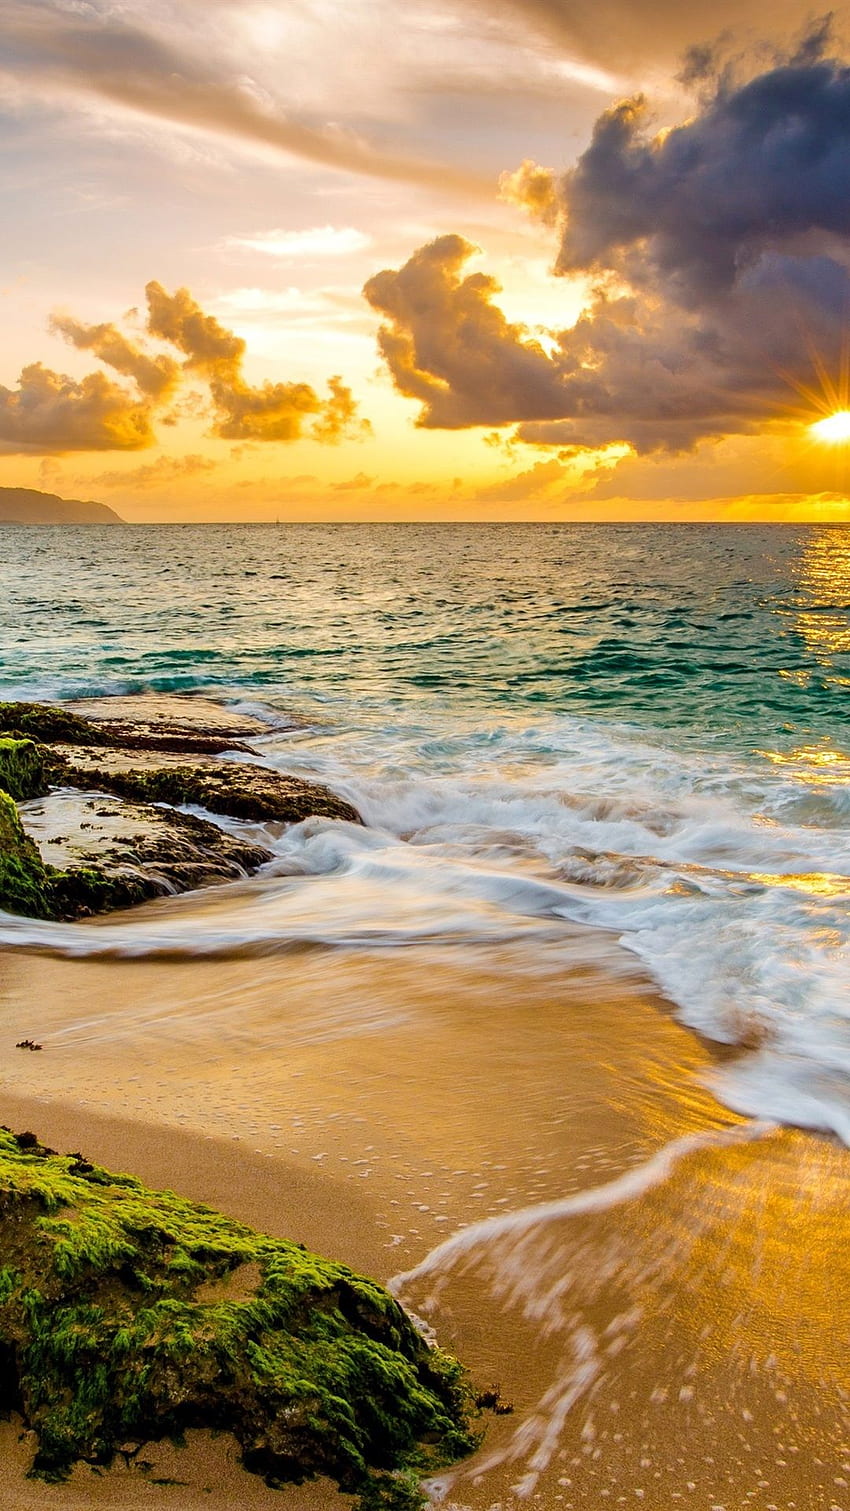 Hawaii mang lại cho bạn trải nghiệm đầy cảm xúc và phong cảnh tuyệt đẹp. Hãy ngắm ảnh và cảm nhận sự hùng vĩ và tinh tế của đảo Hawaii!